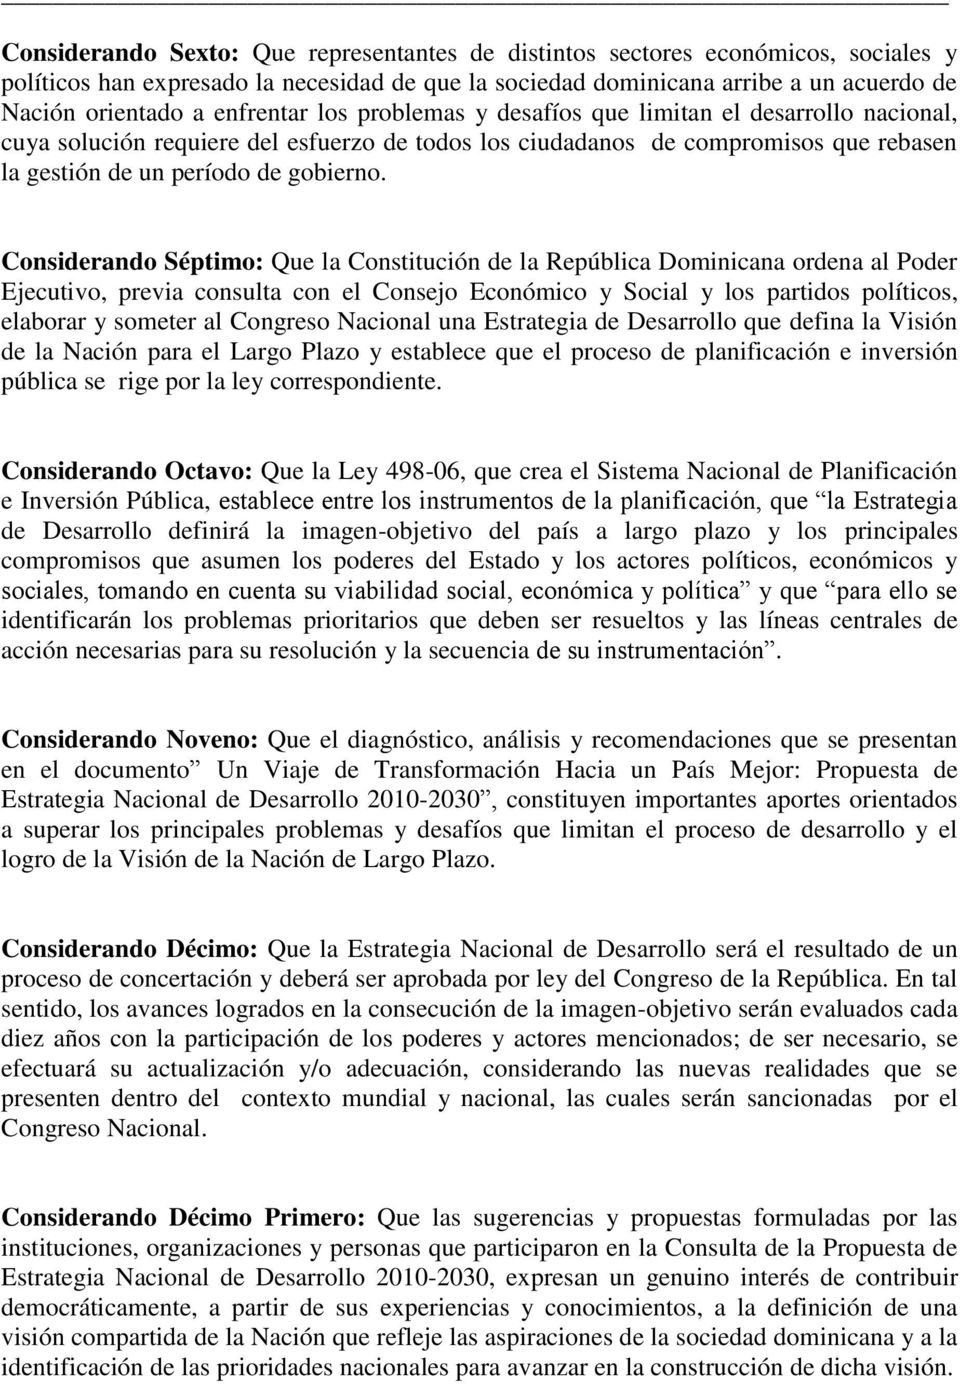 Considerando Séptimo: Que la Constitución de la República Dominicana ordena al Poder Ejecutivo, previa consulta con el Consejo Económico y Social y los partidos políticos, elaborar y someter al